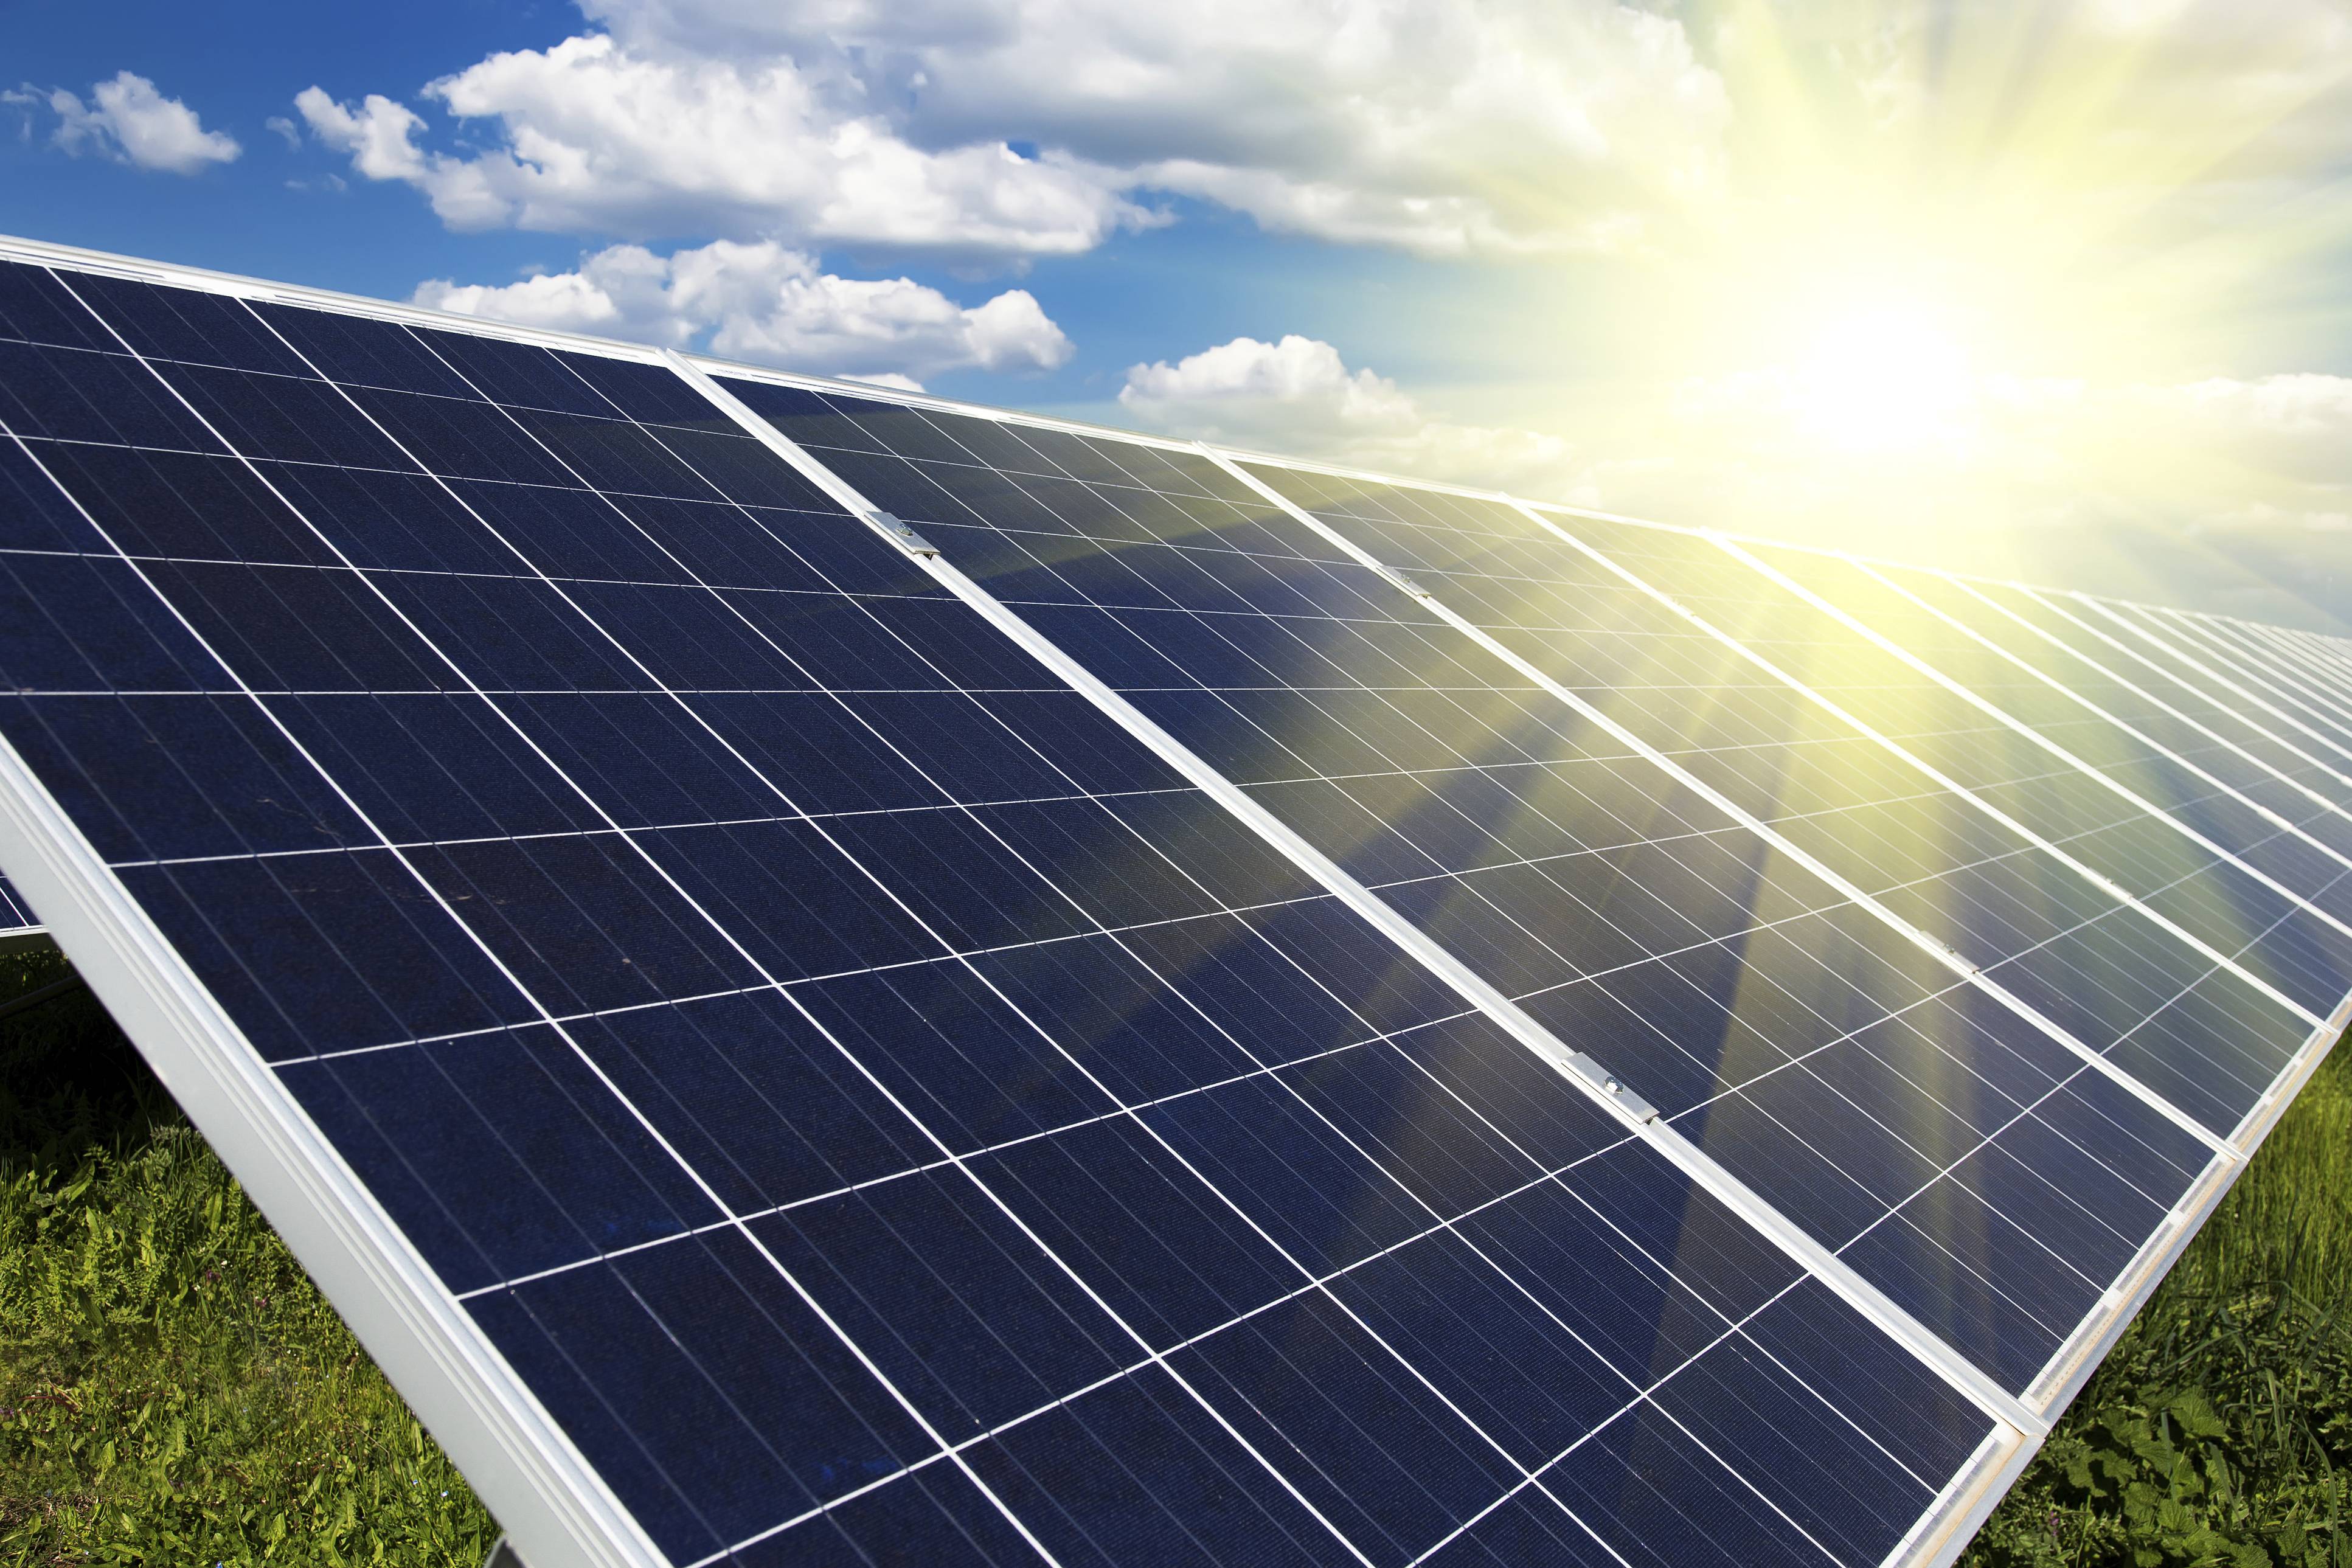 Солнечные батареи: устройство, виды и эффективность